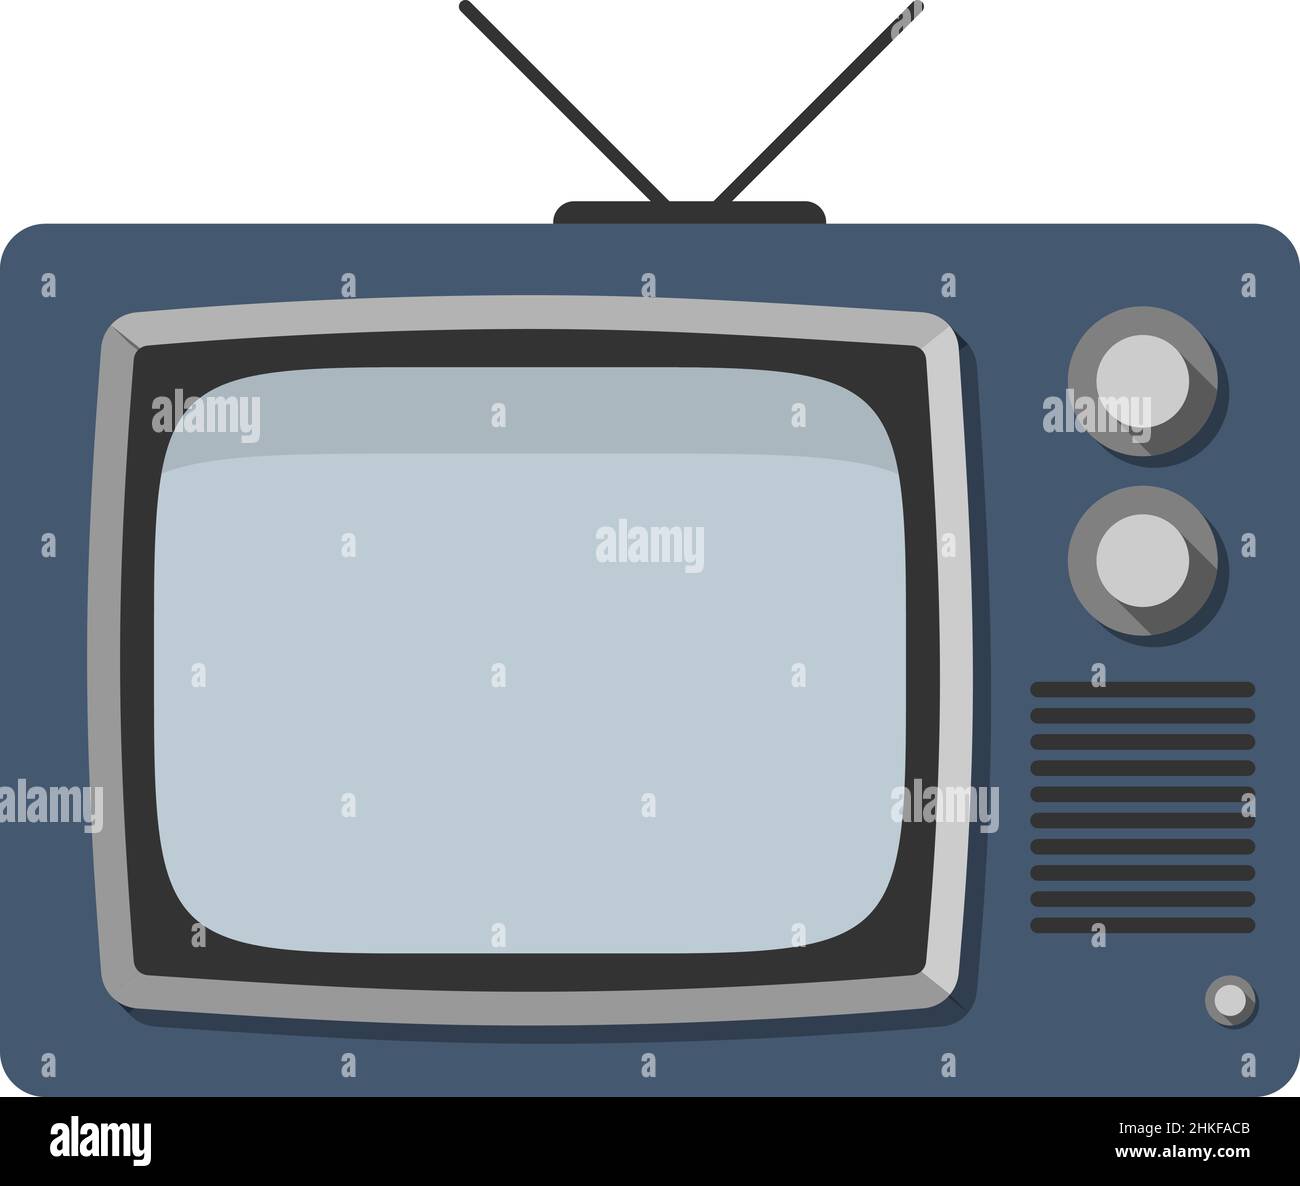 televisione a tubo d'epoca, televisore crt isolato su sfondo bianco, illustrazione vettoriale Illustrazione Vettoriale